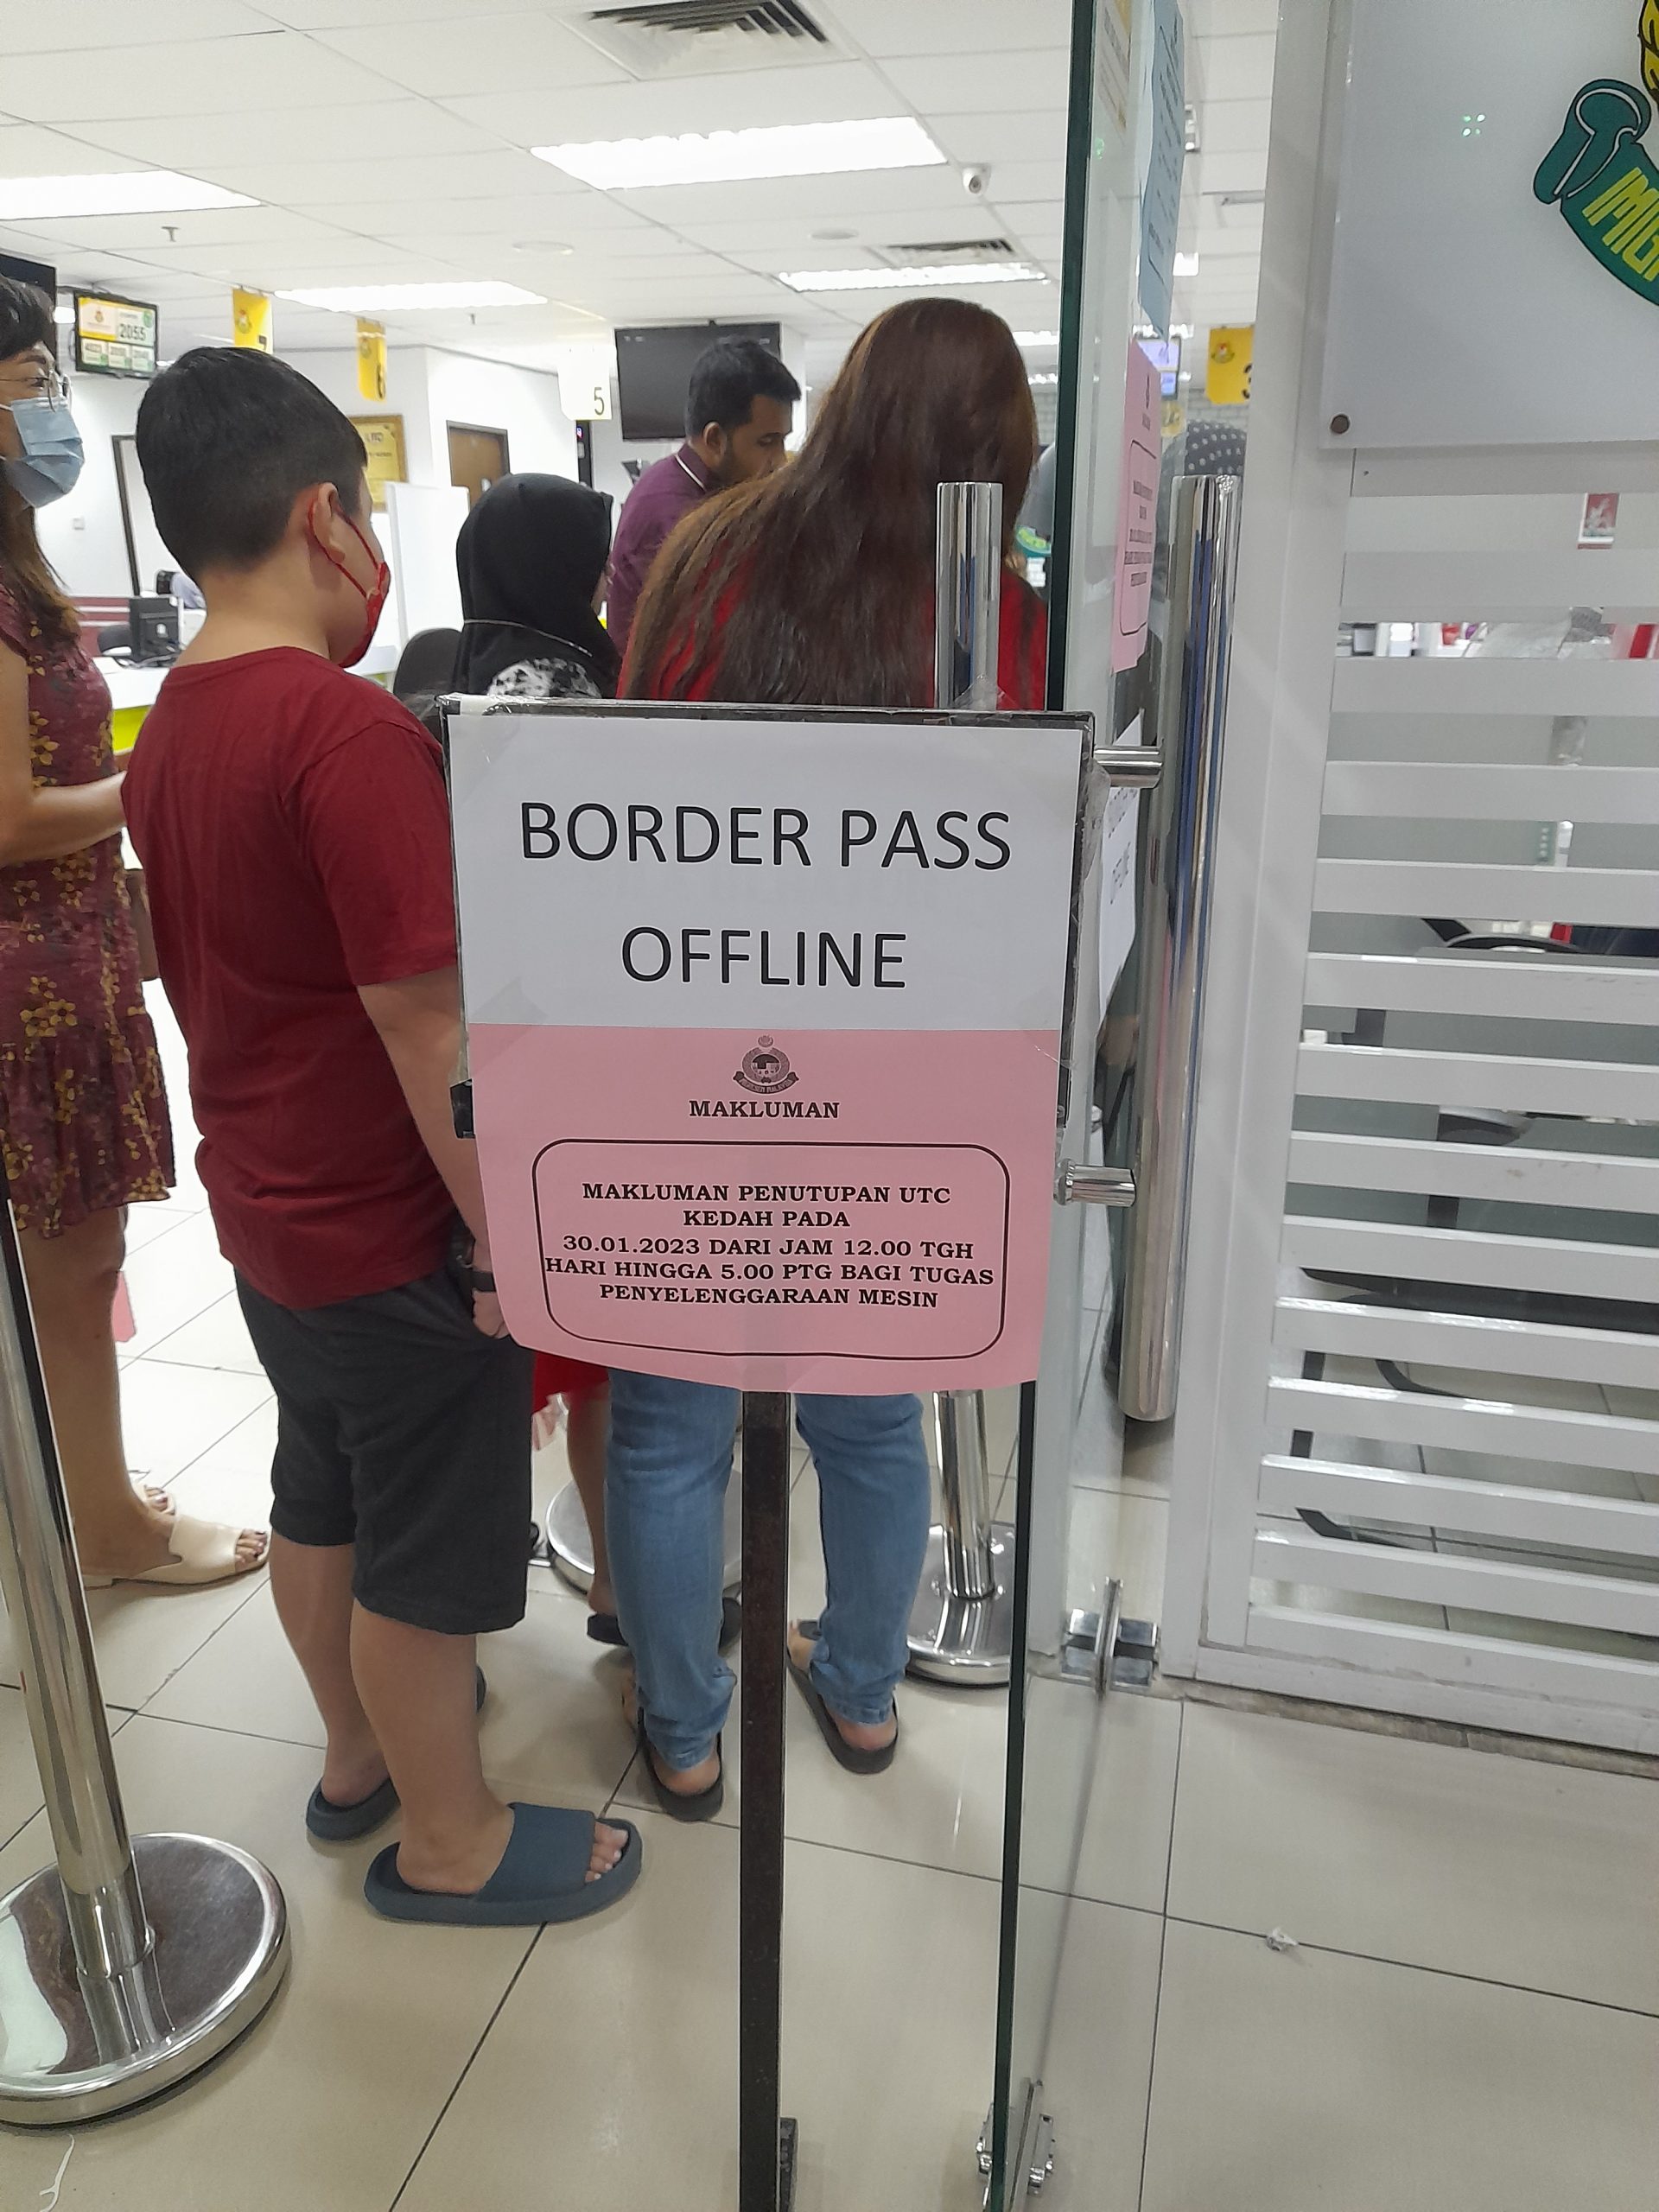 （大北马）吉3地点暂停办马泰边境通行证 仅允2关卡及交怡申请